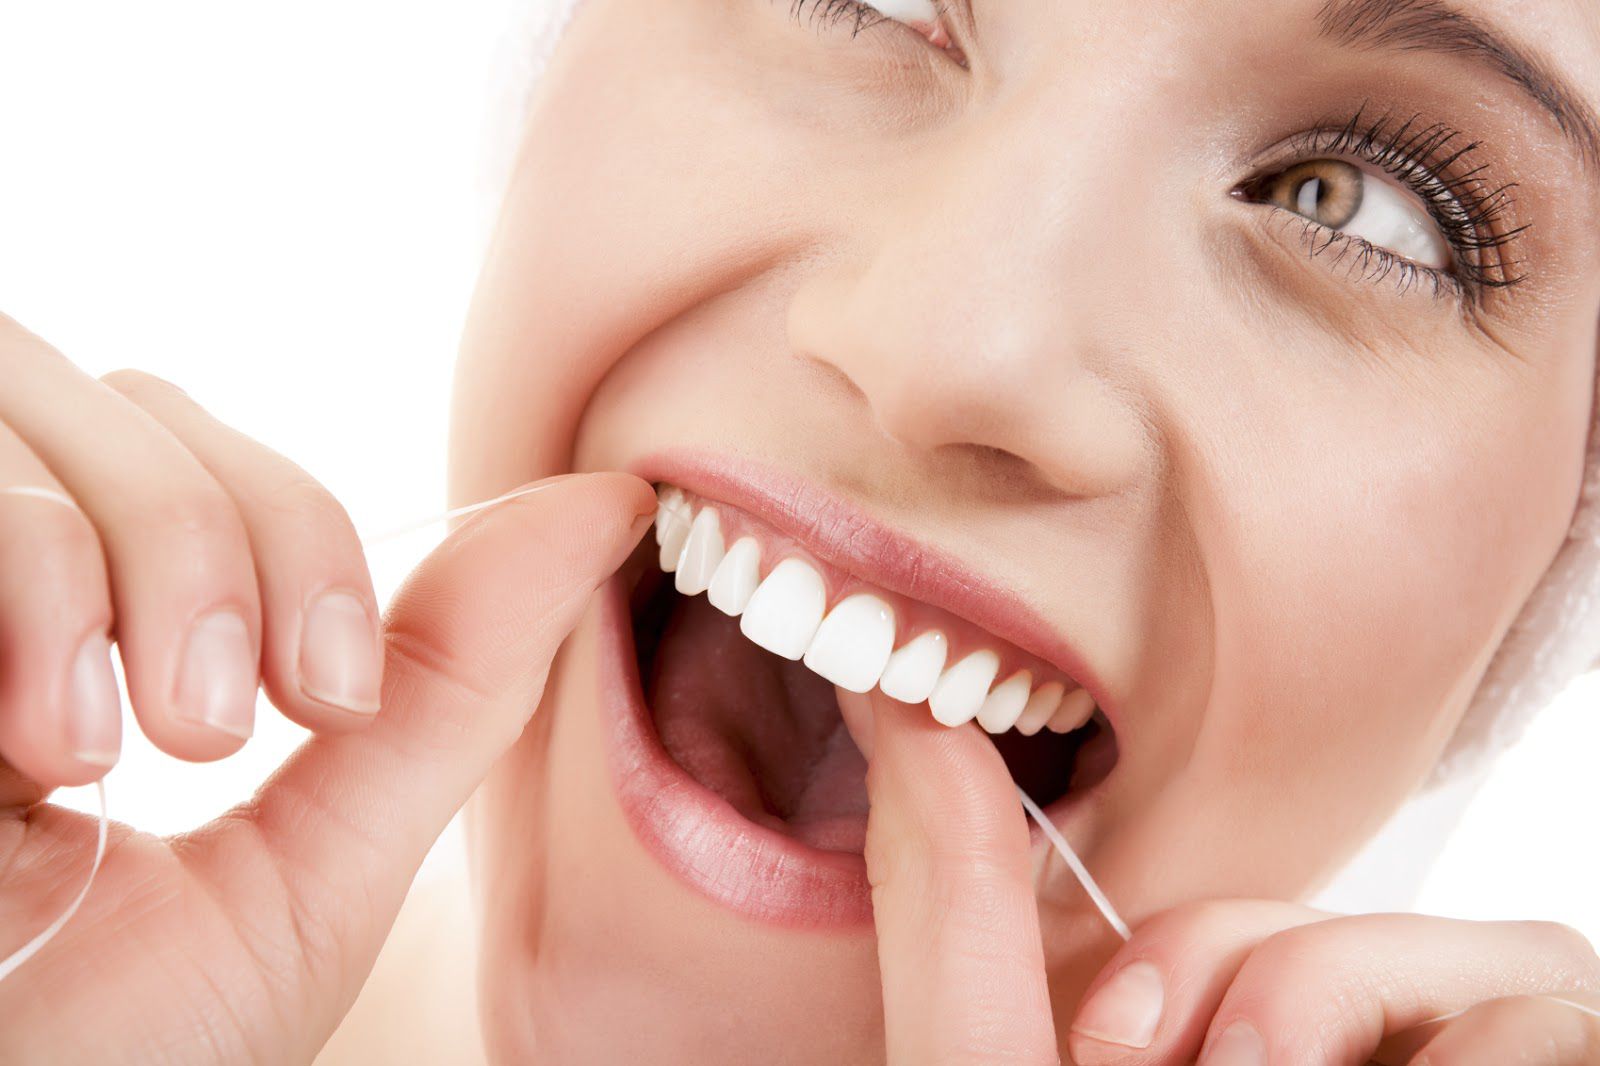 Cách chăm sóc răng sau khi bọc sứ